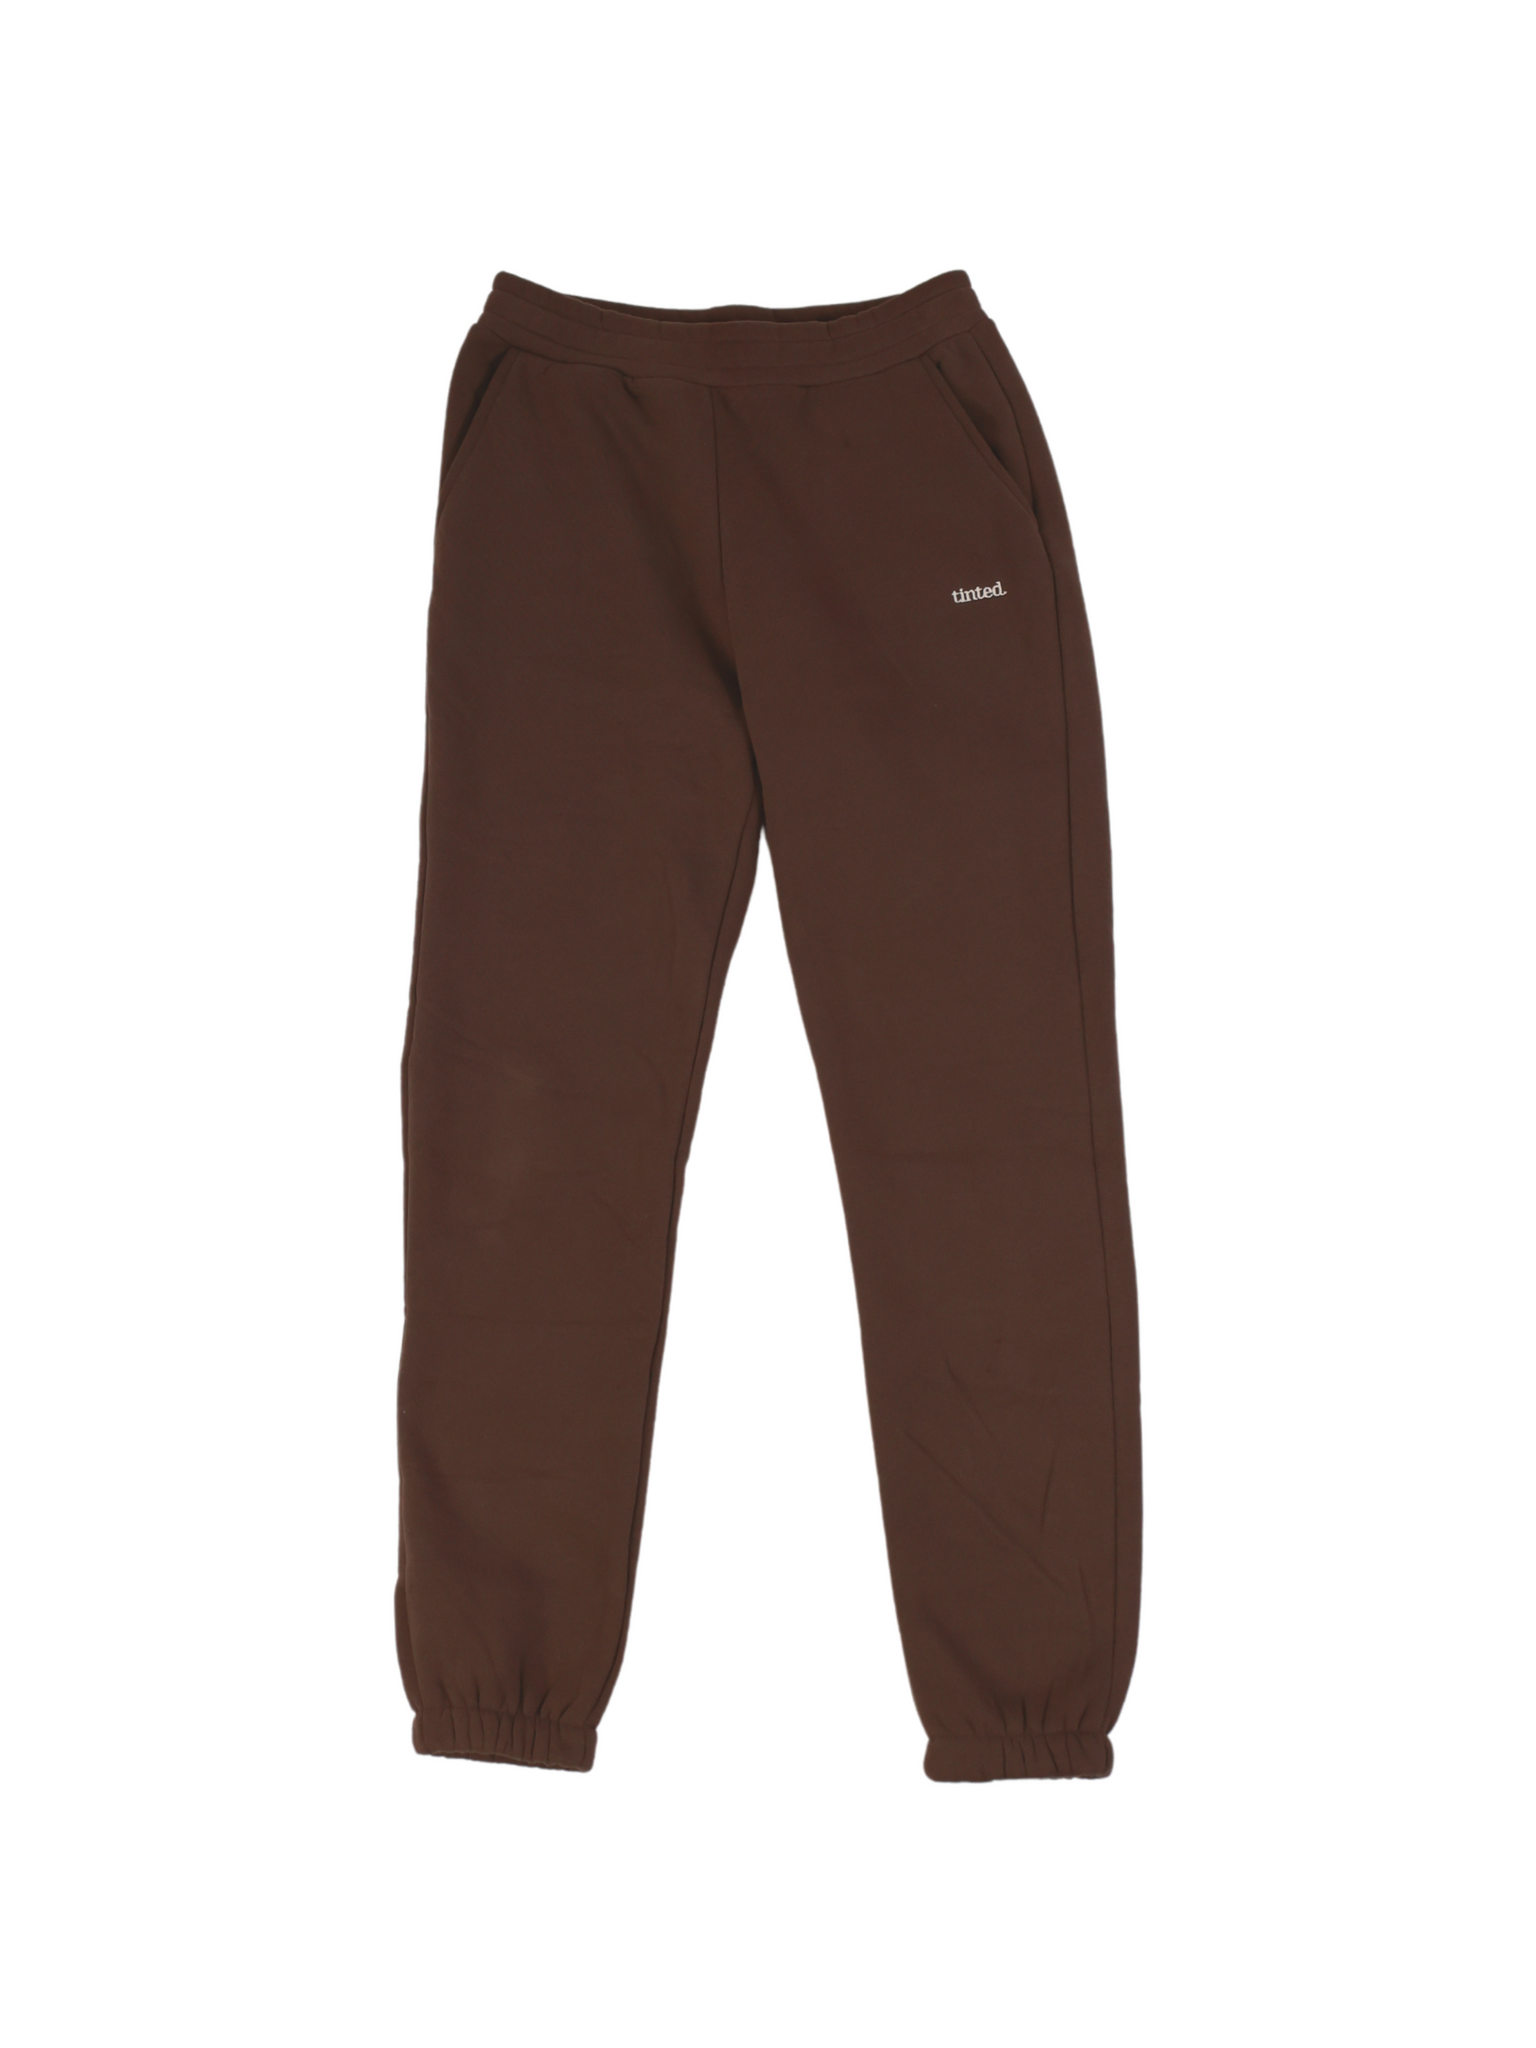 Park Sweatpants - Groundhog Brown Fleece